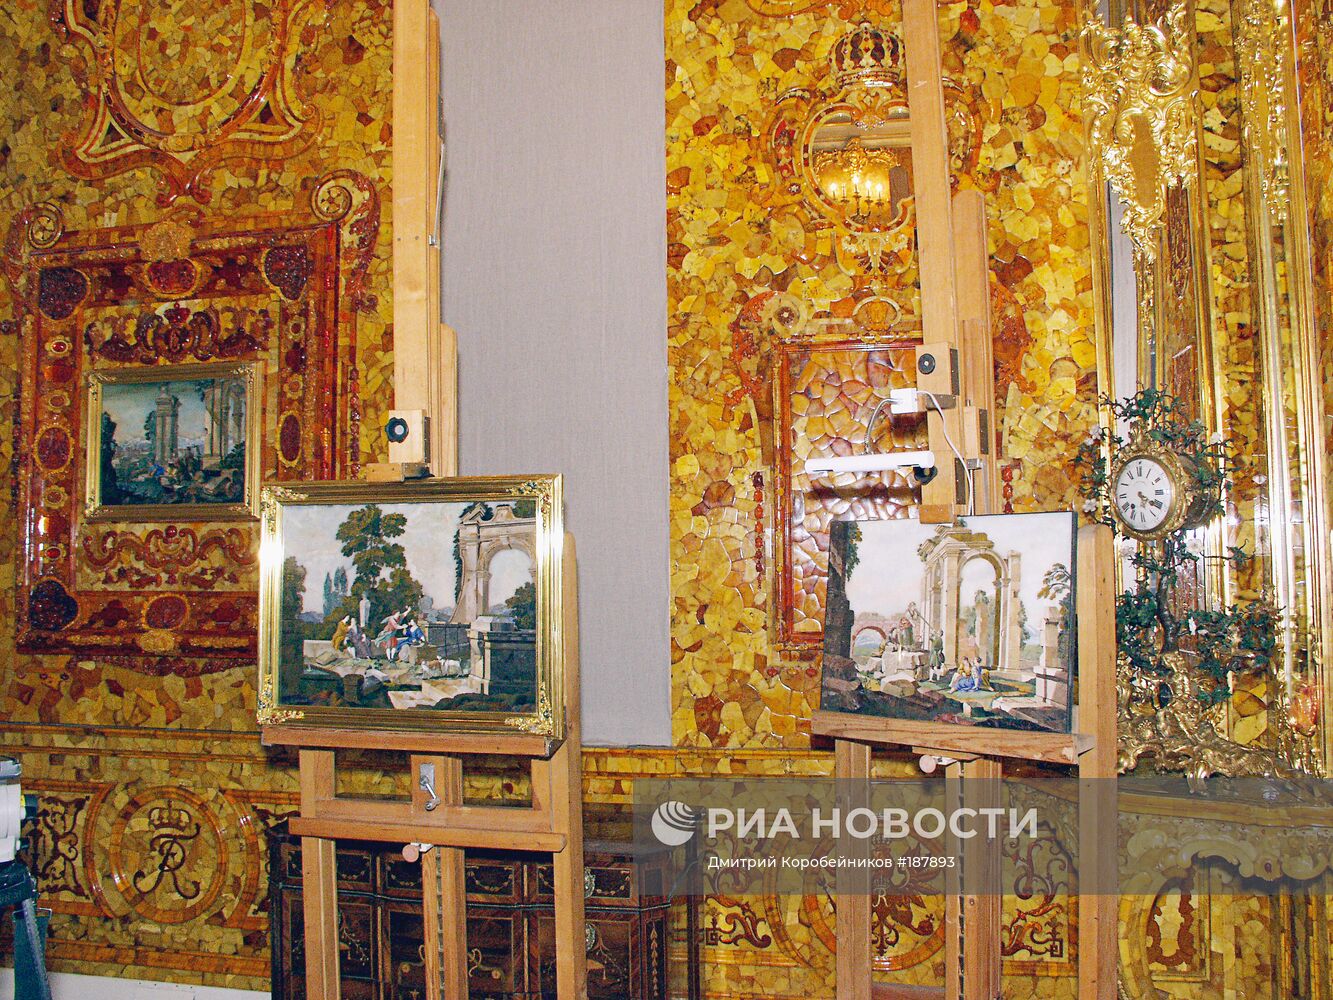 Восстановленная часть Янтарной комнаты в Екатерининском дворце